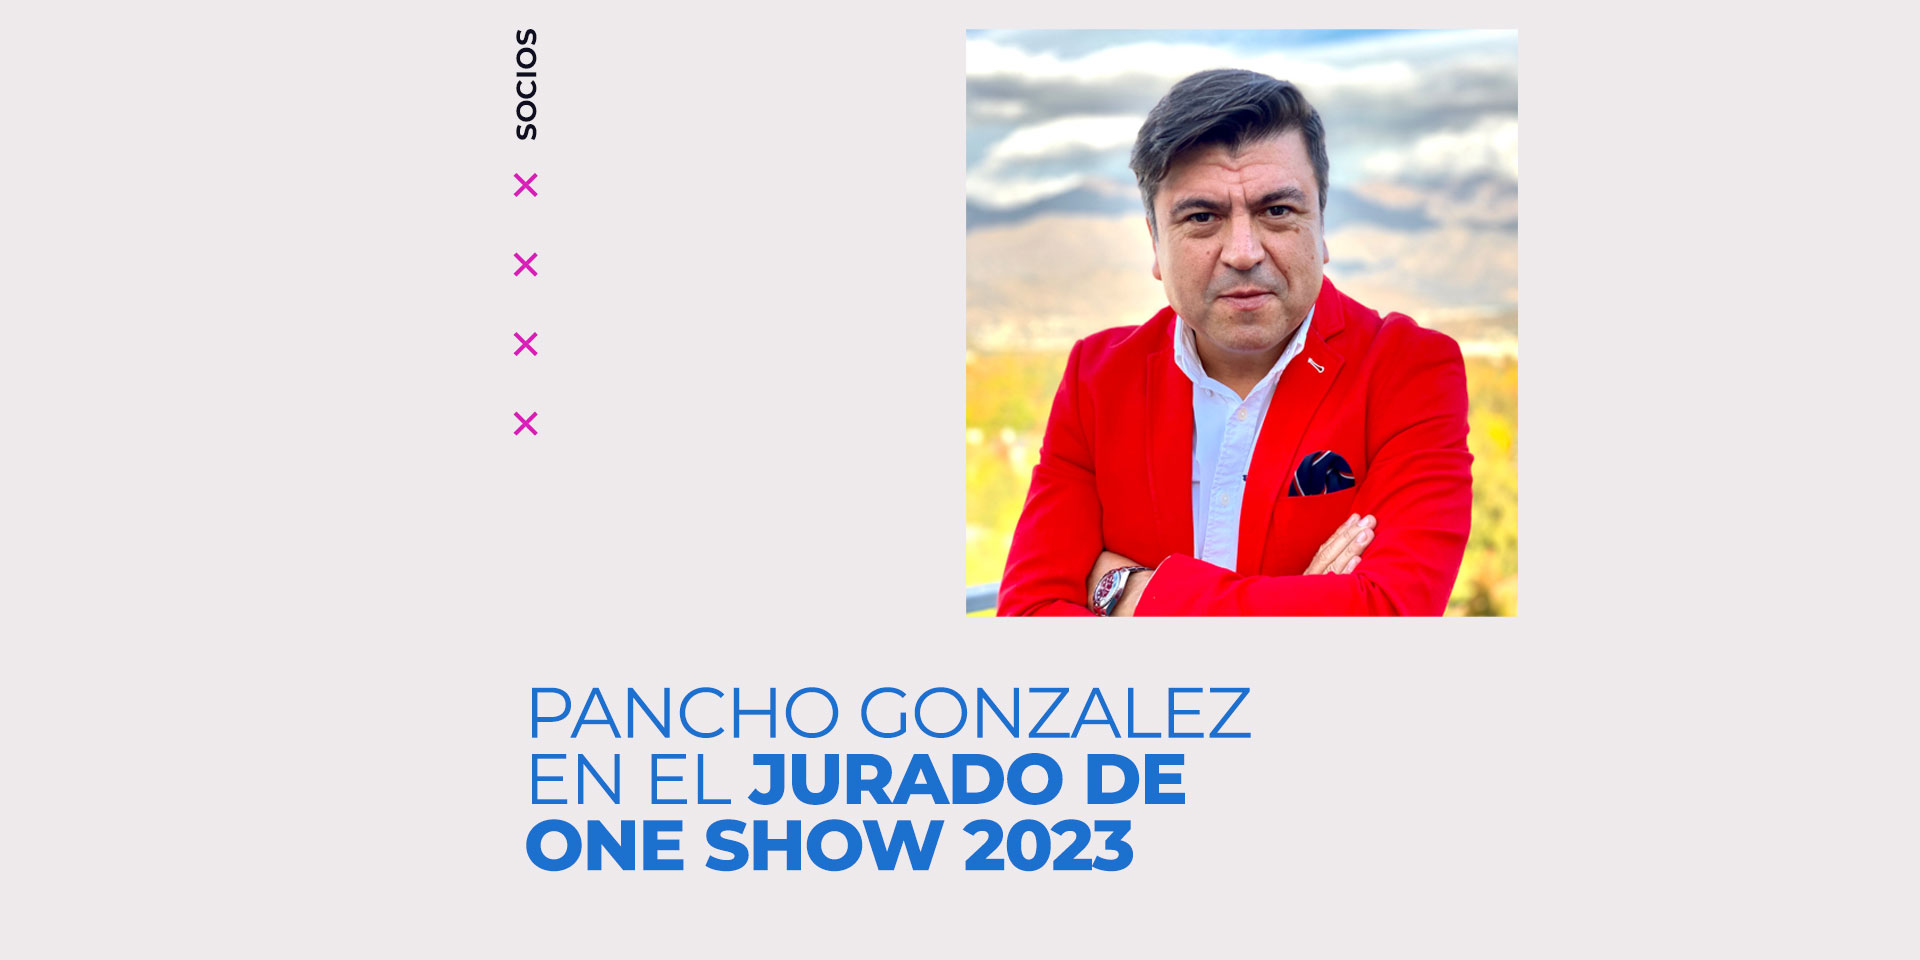 Pancho González es el jurado chileno de One Show 2023